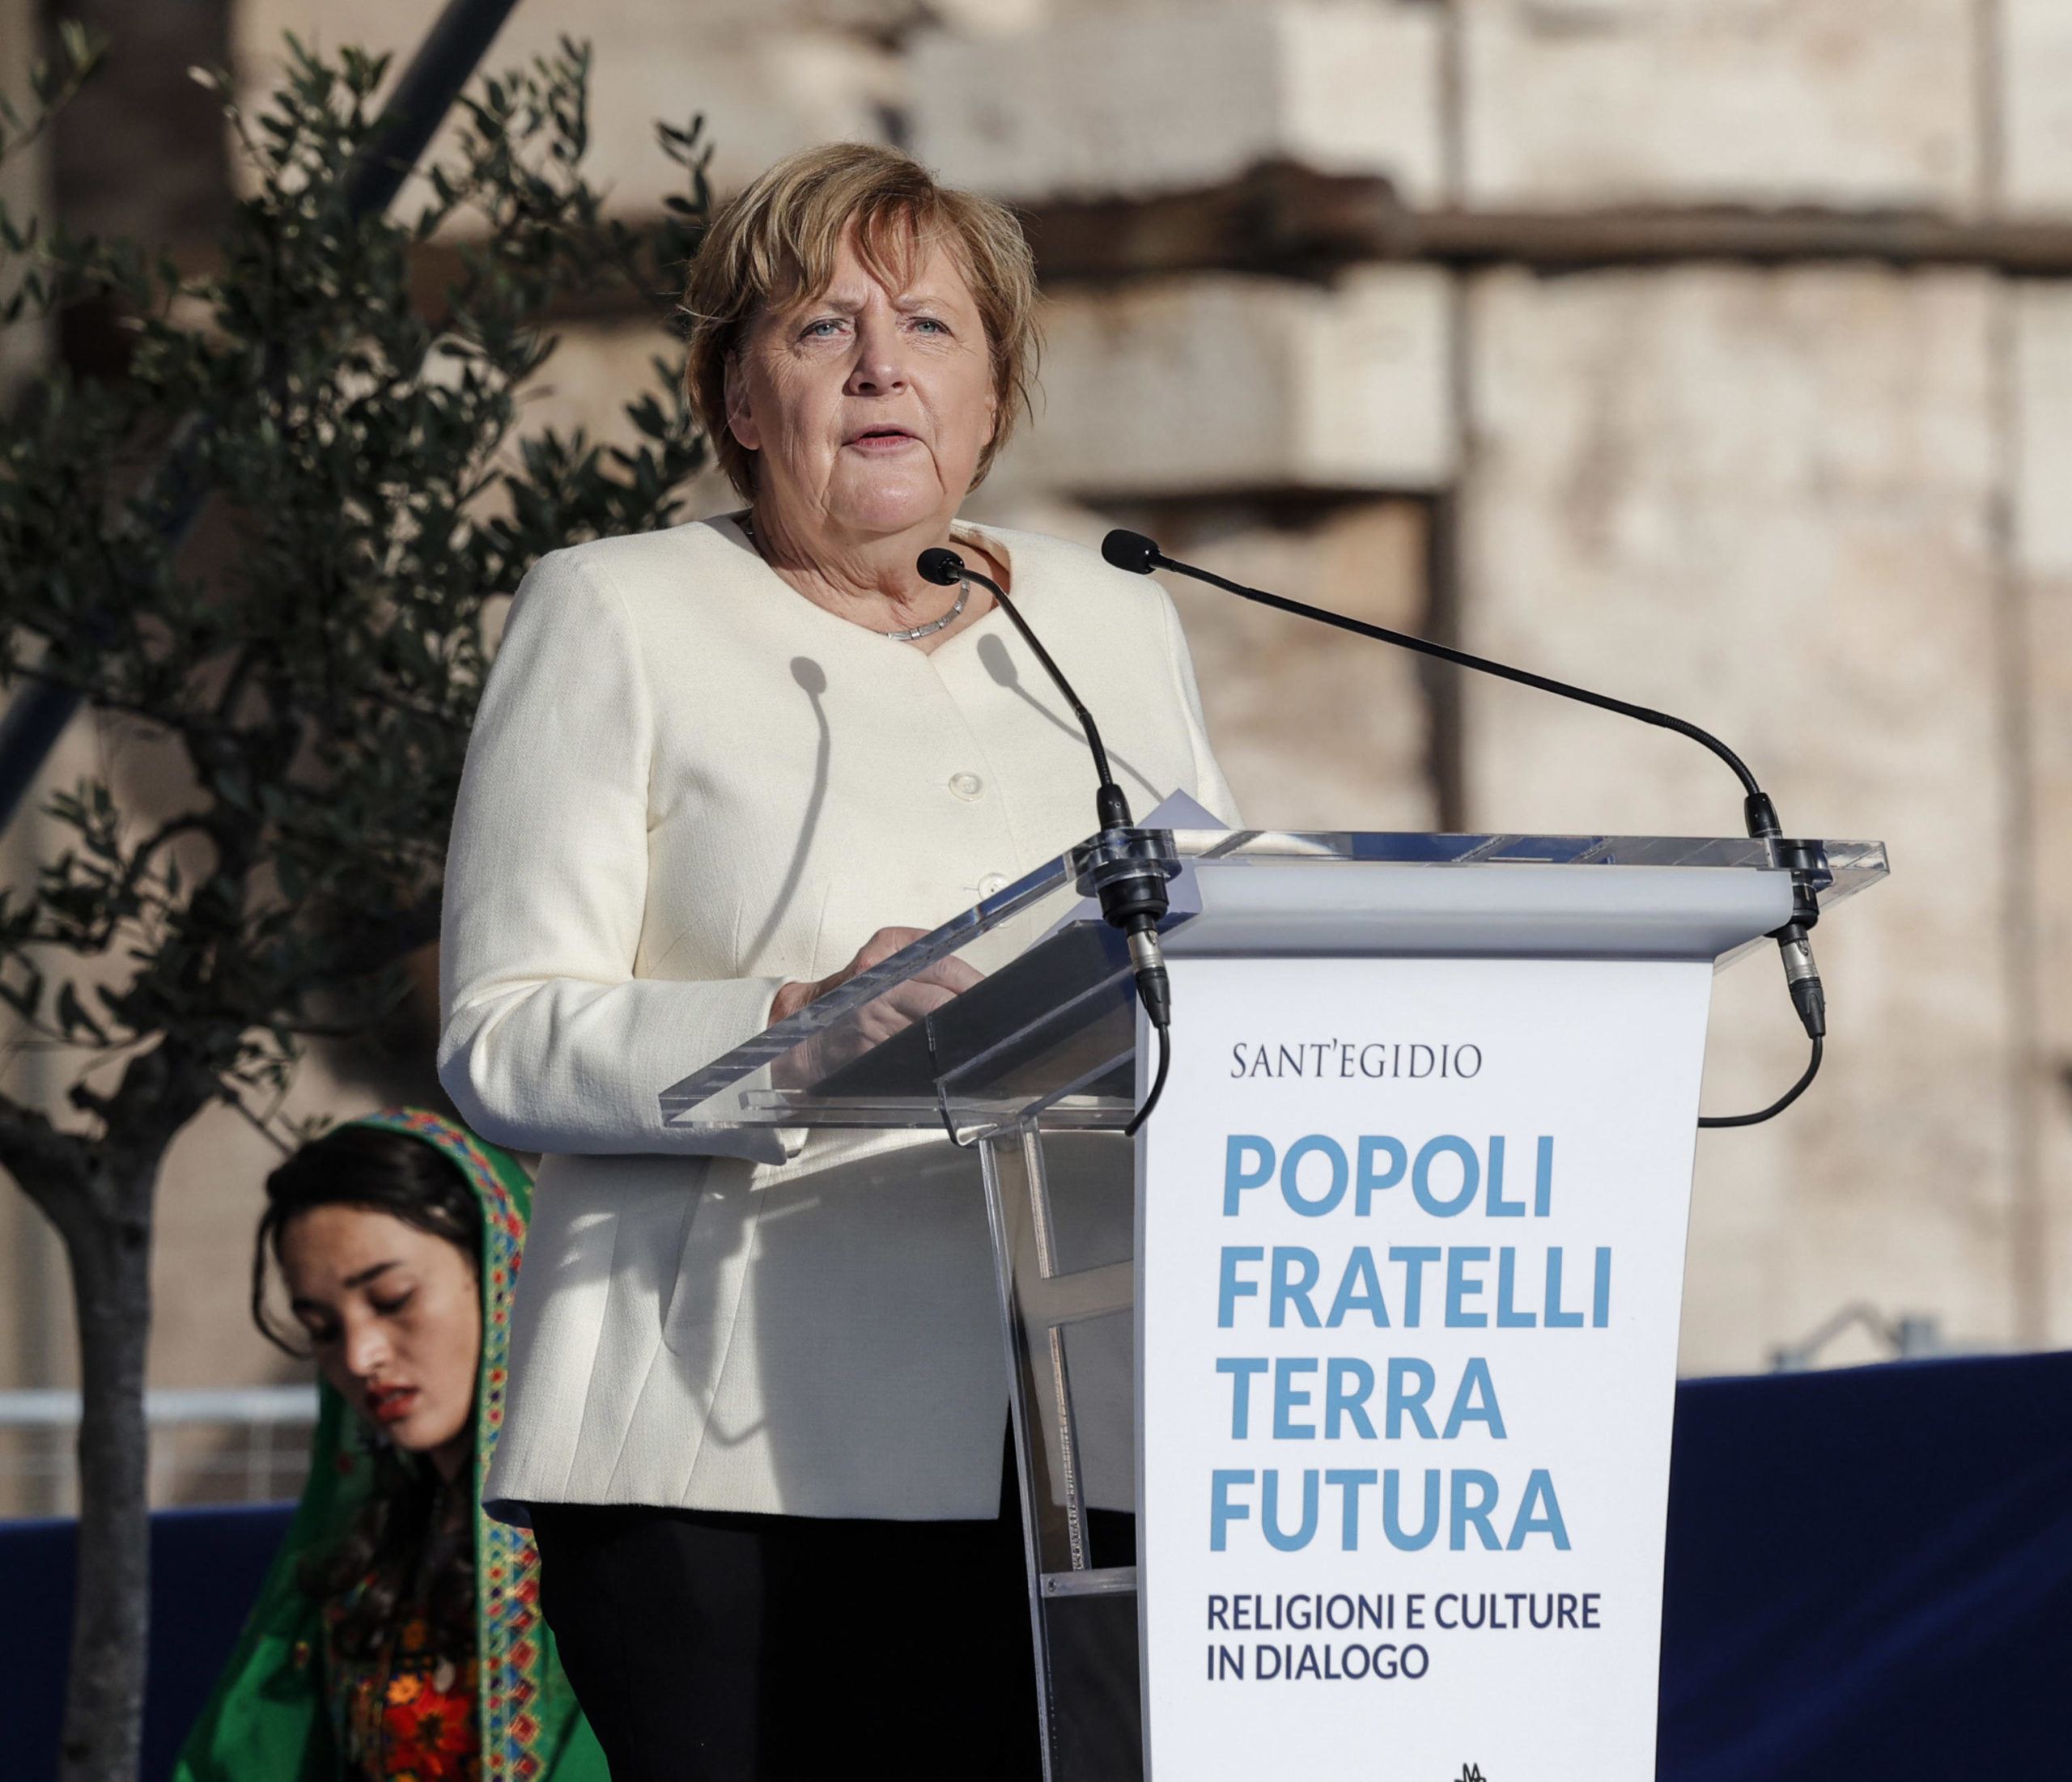 L'intervento di Merkel: "Deve sorgere la coscienza che l'umanità è una"